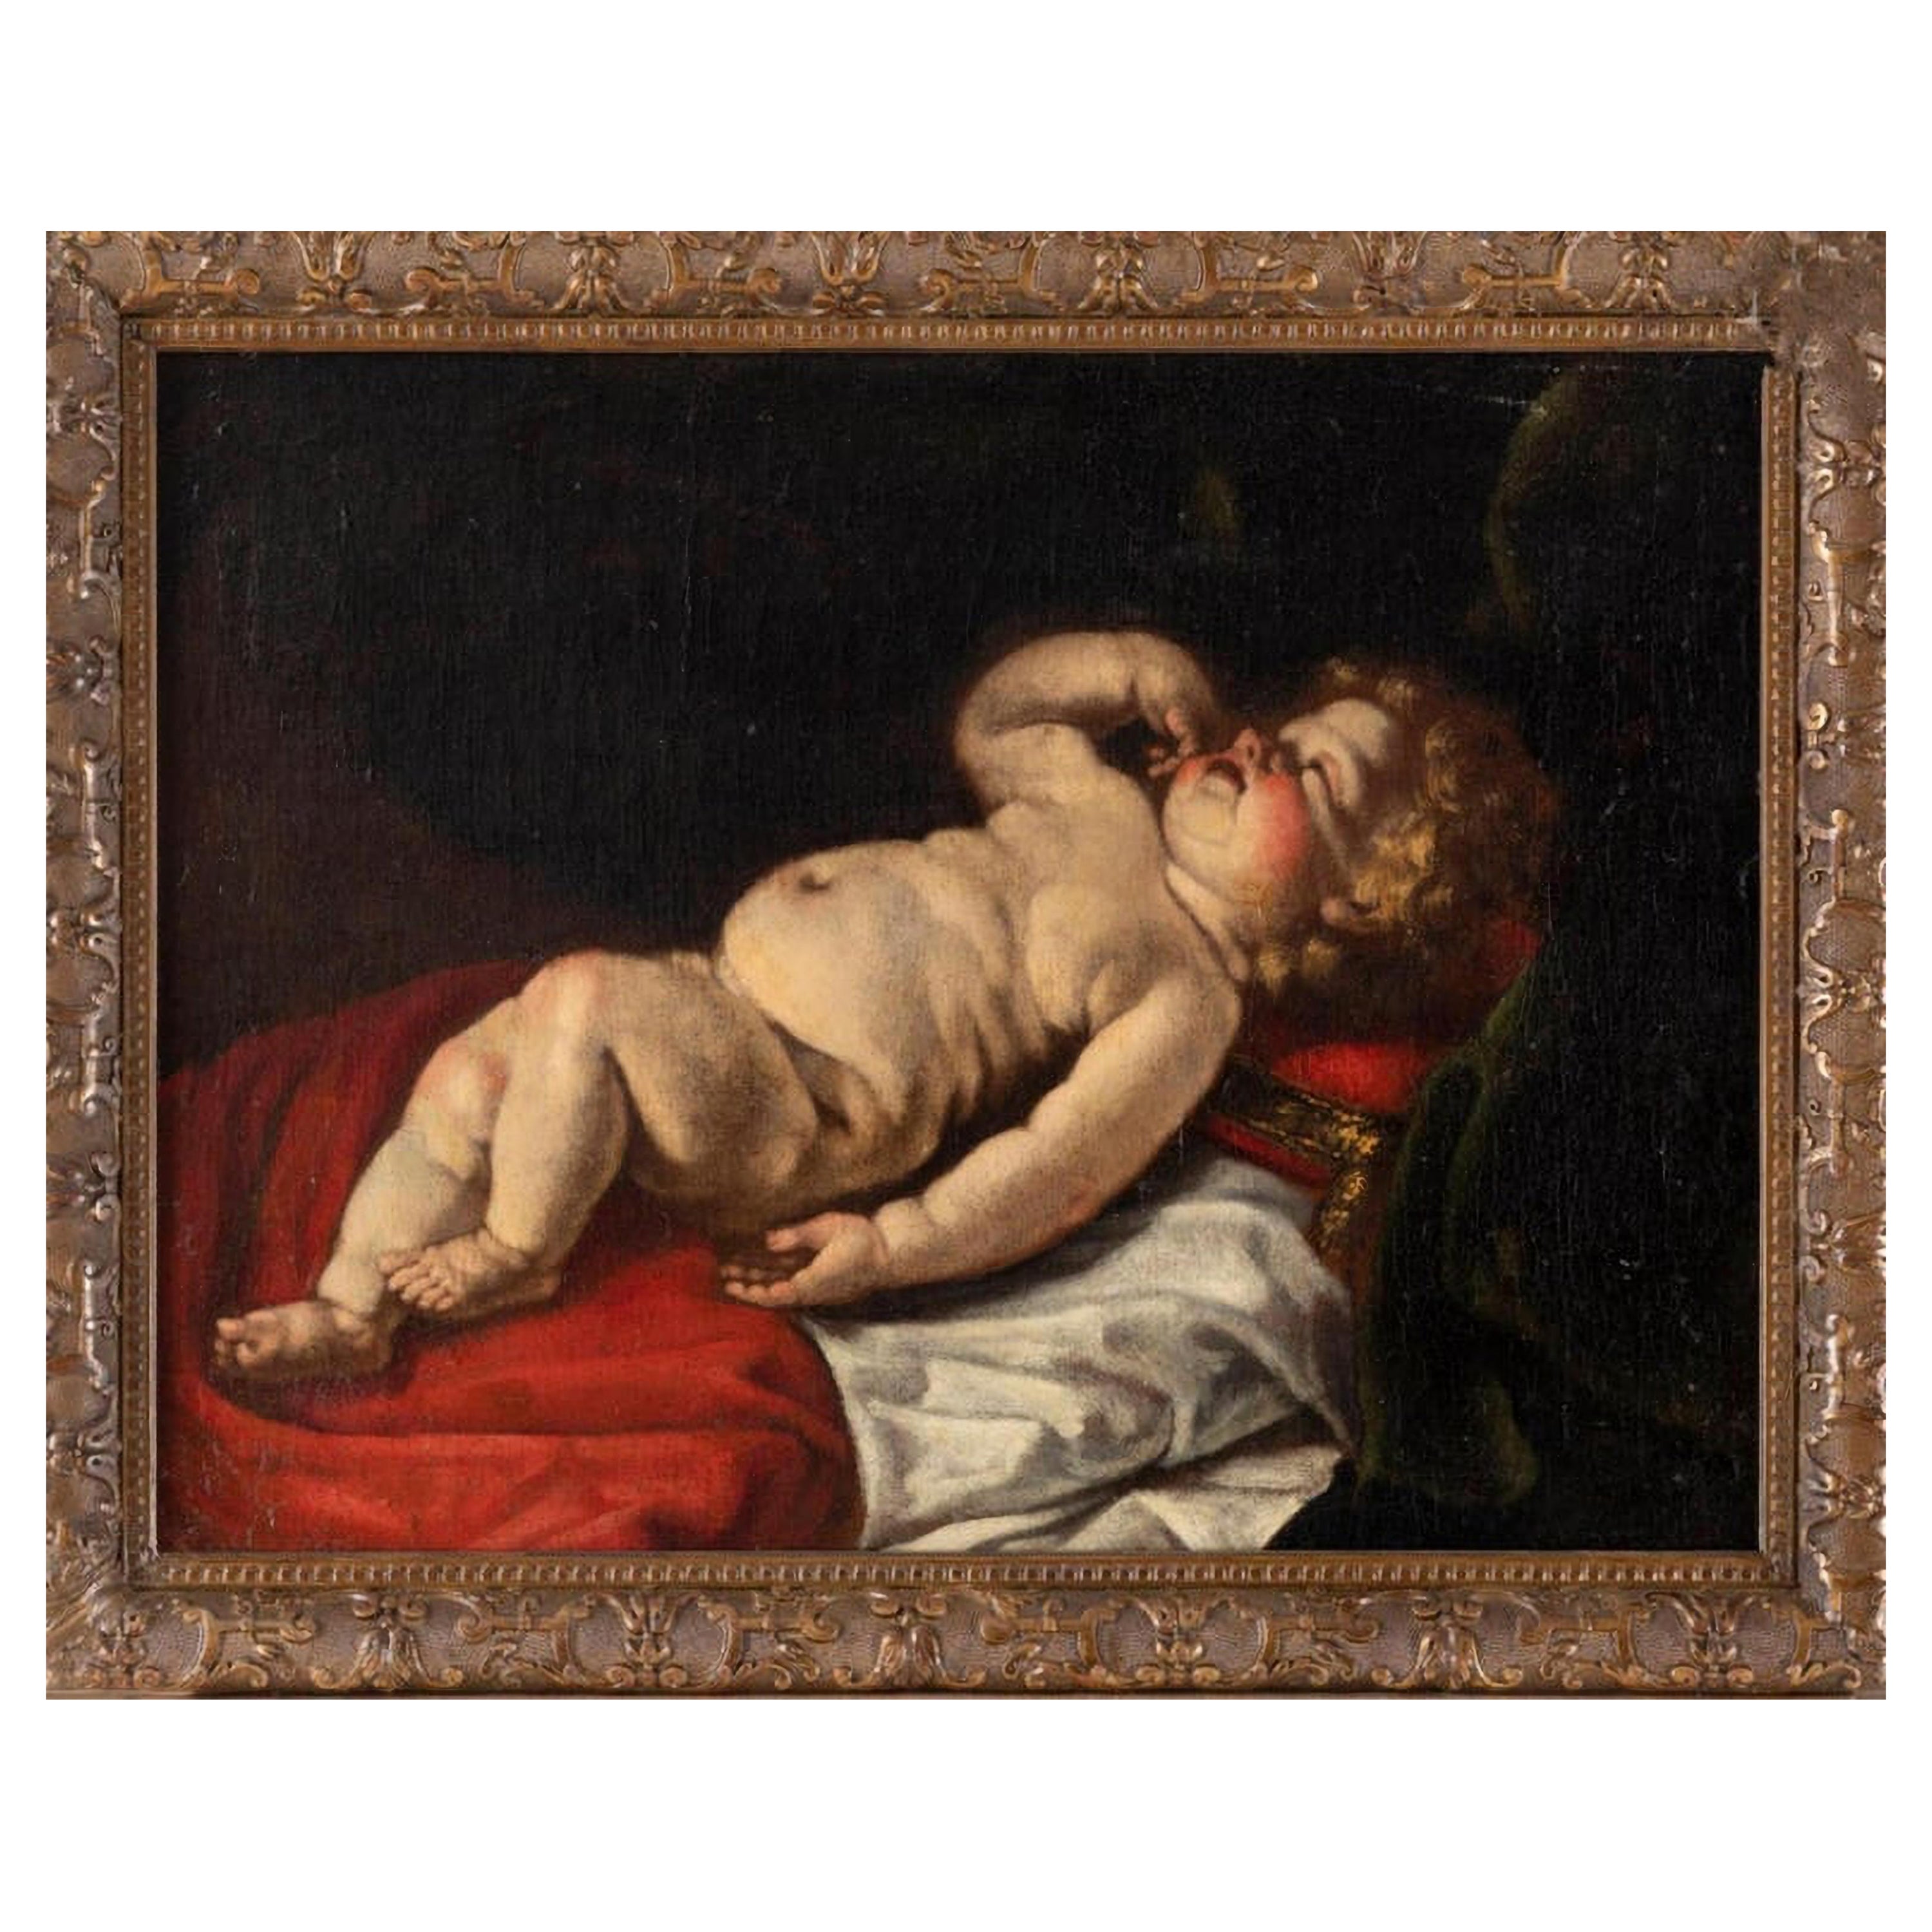 Luigi Miradori circa 1600 - circa 1657 "Young Sleeping Child" 17th Century VIDE0 For Sale